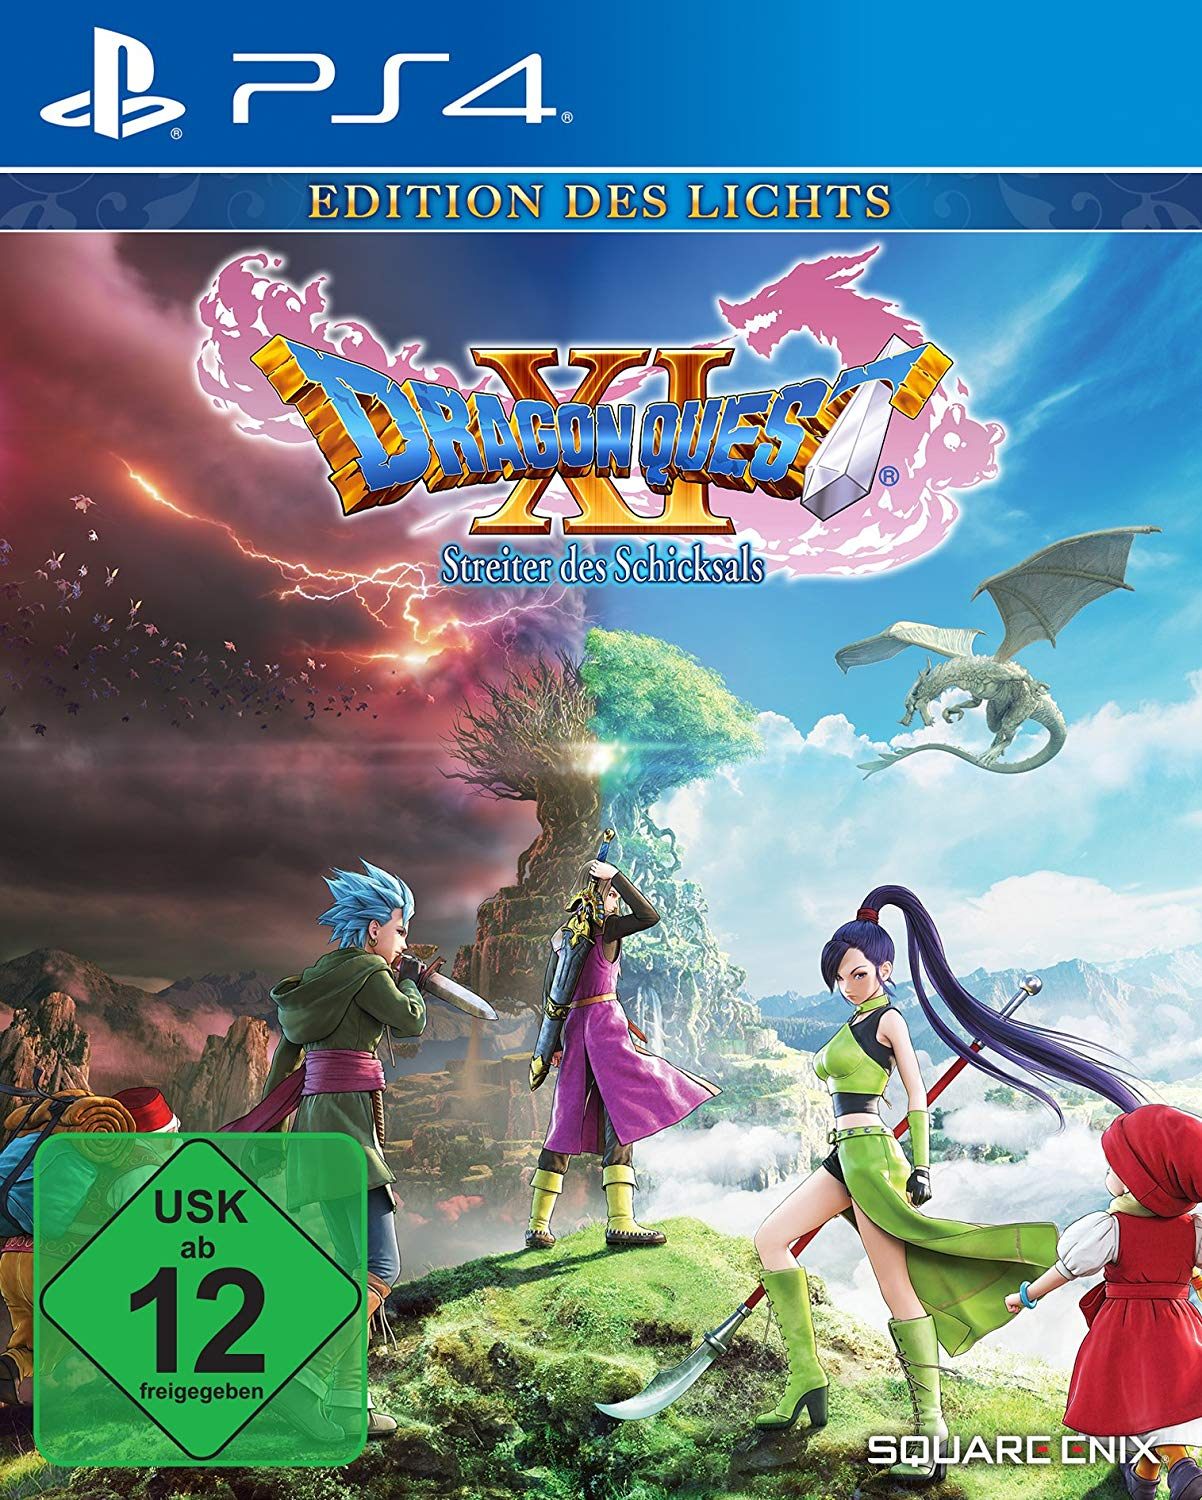 [PlayStation Schicksals - Quest Lichts - 4] des des Dragon Streiter Edition XI